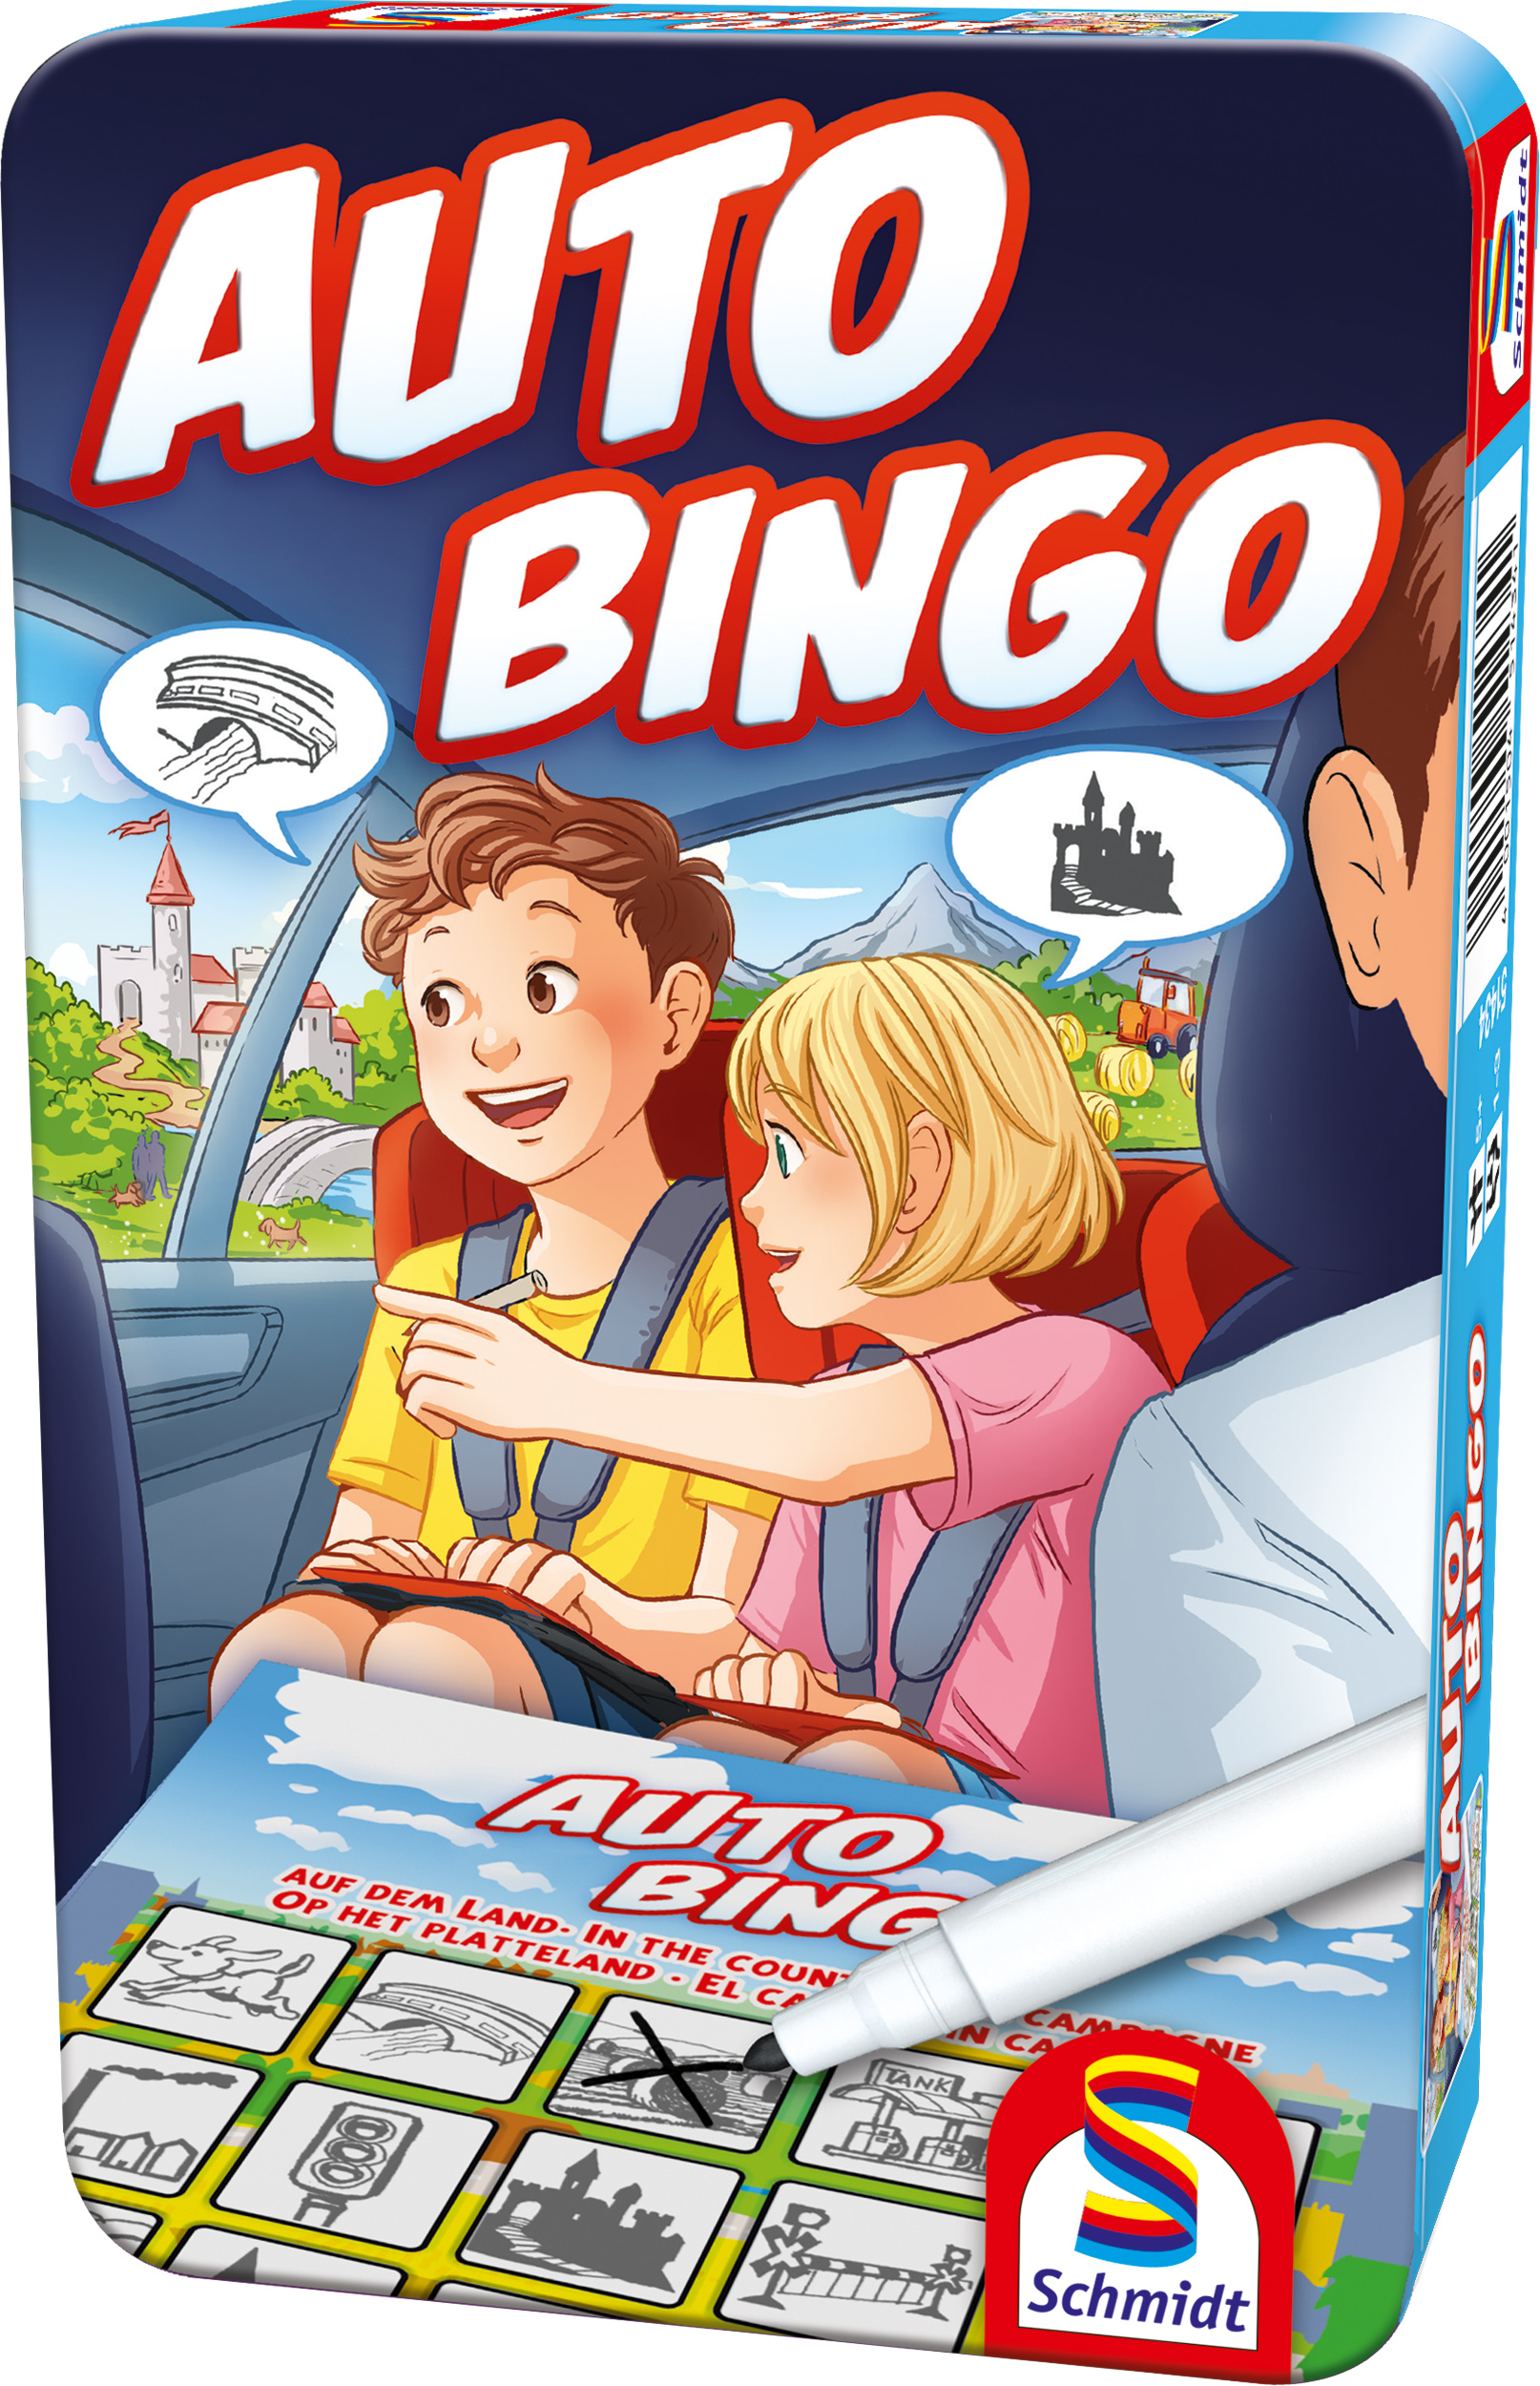 Gesellschaftsspiel in M-Auto-Bingo  - SCHMIDT SPIELE Metalldose Bring-Mich-Mit-Spiel nein